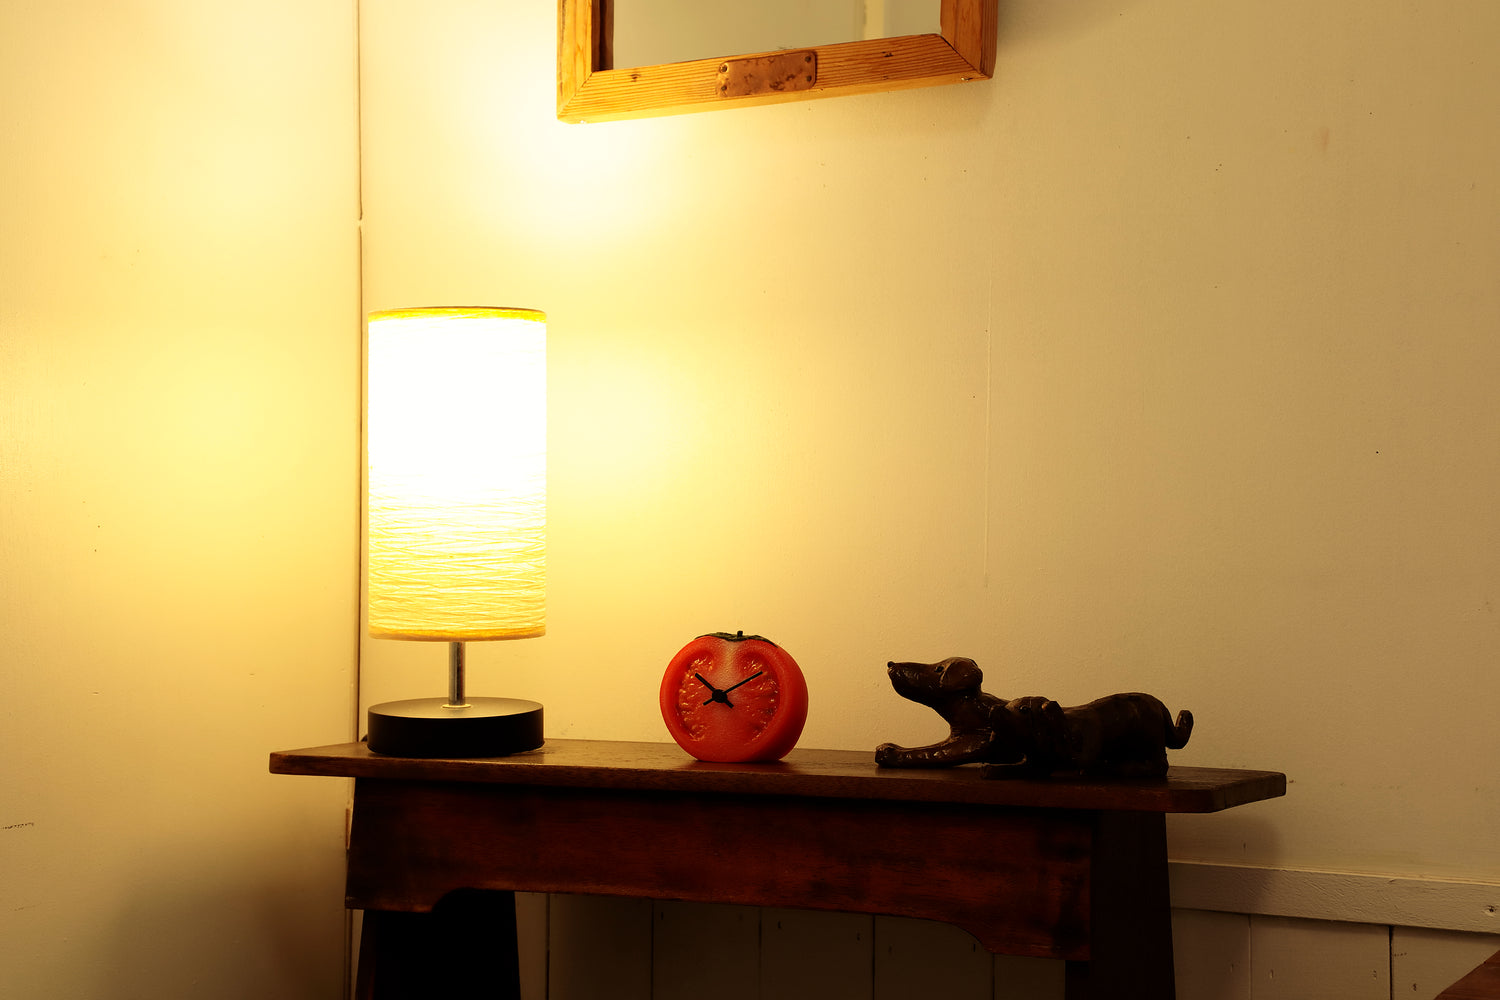 元祖食品サンプル屋「Replica Food Clock トマト」の暗い部屋に置いたイメージ画像です。